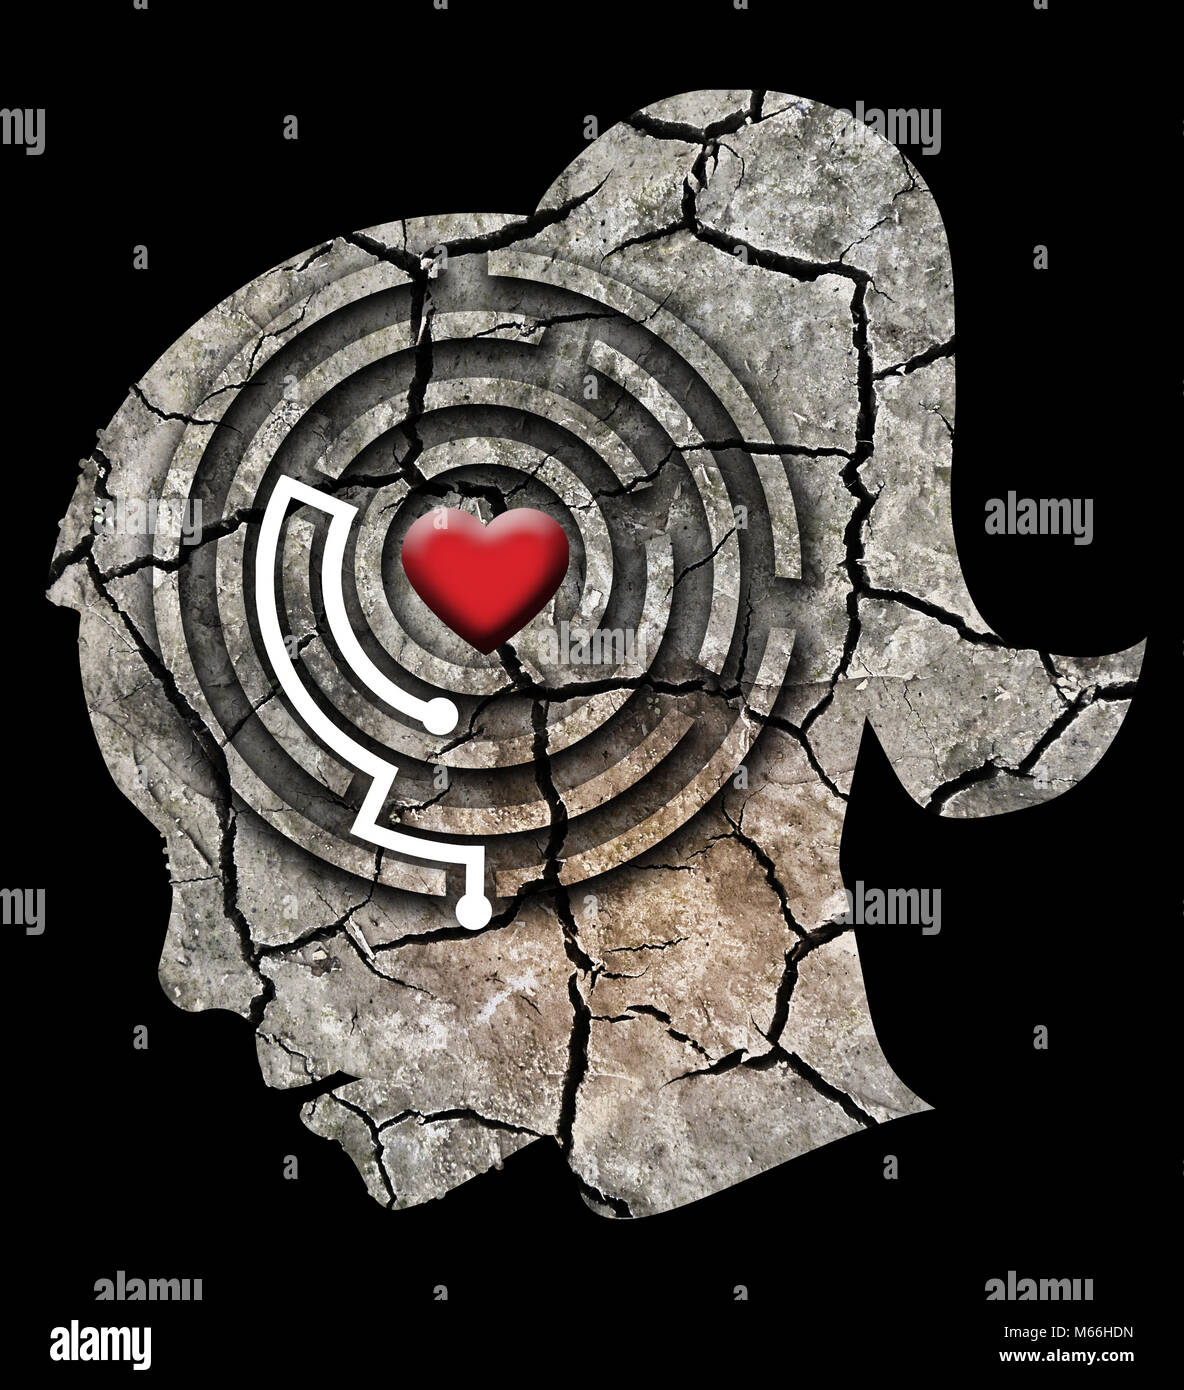 Aimer vous-même concept. Silhouette de la tête d'une femme stylisée avec un coeur dans un labyrinthe. Photo-montage avec Dry cracked earth. Banque D'Images